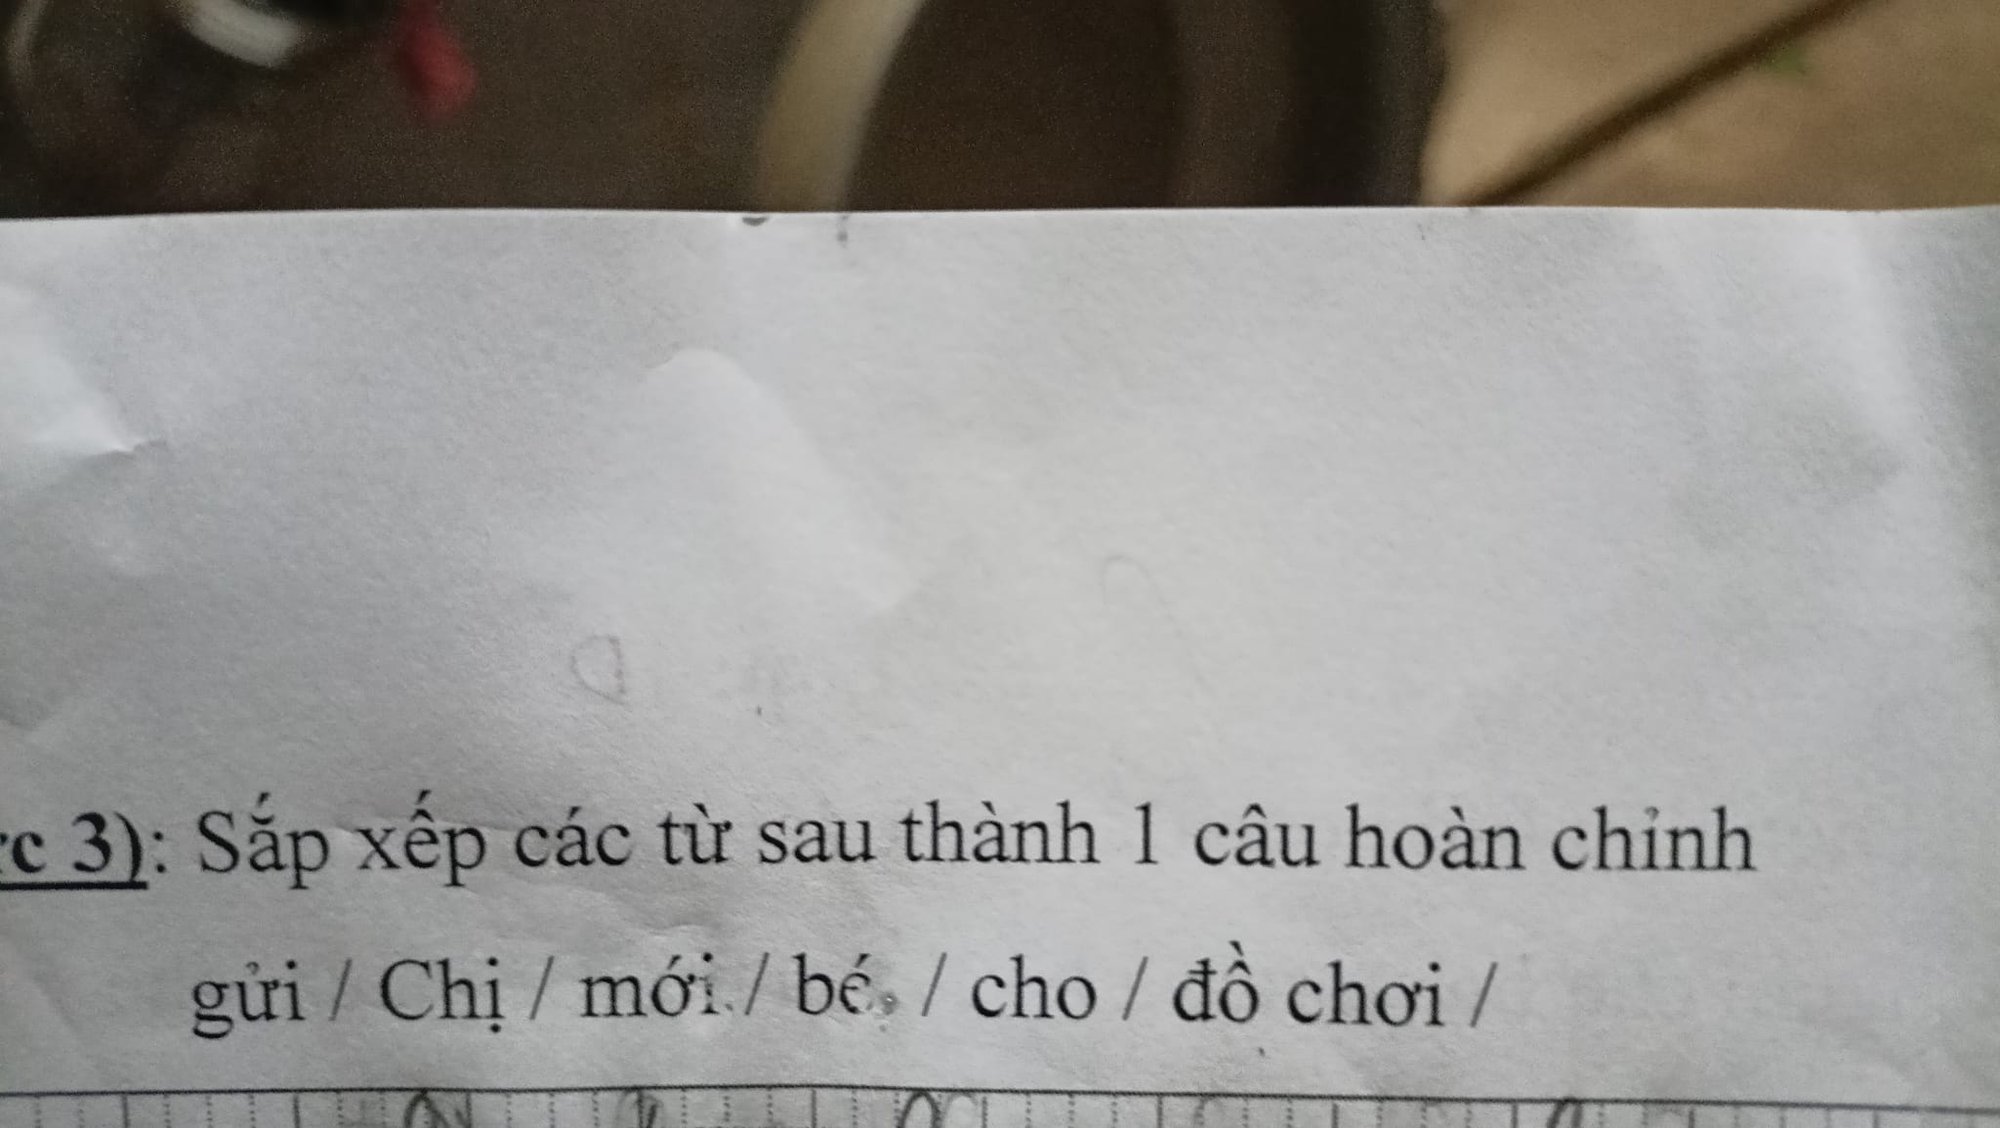 Bài thi môn Tiếng Việt lớp 1 cho 7 từ để ghép thành câu, phụ huynh chịu thua - Ảnh 1.